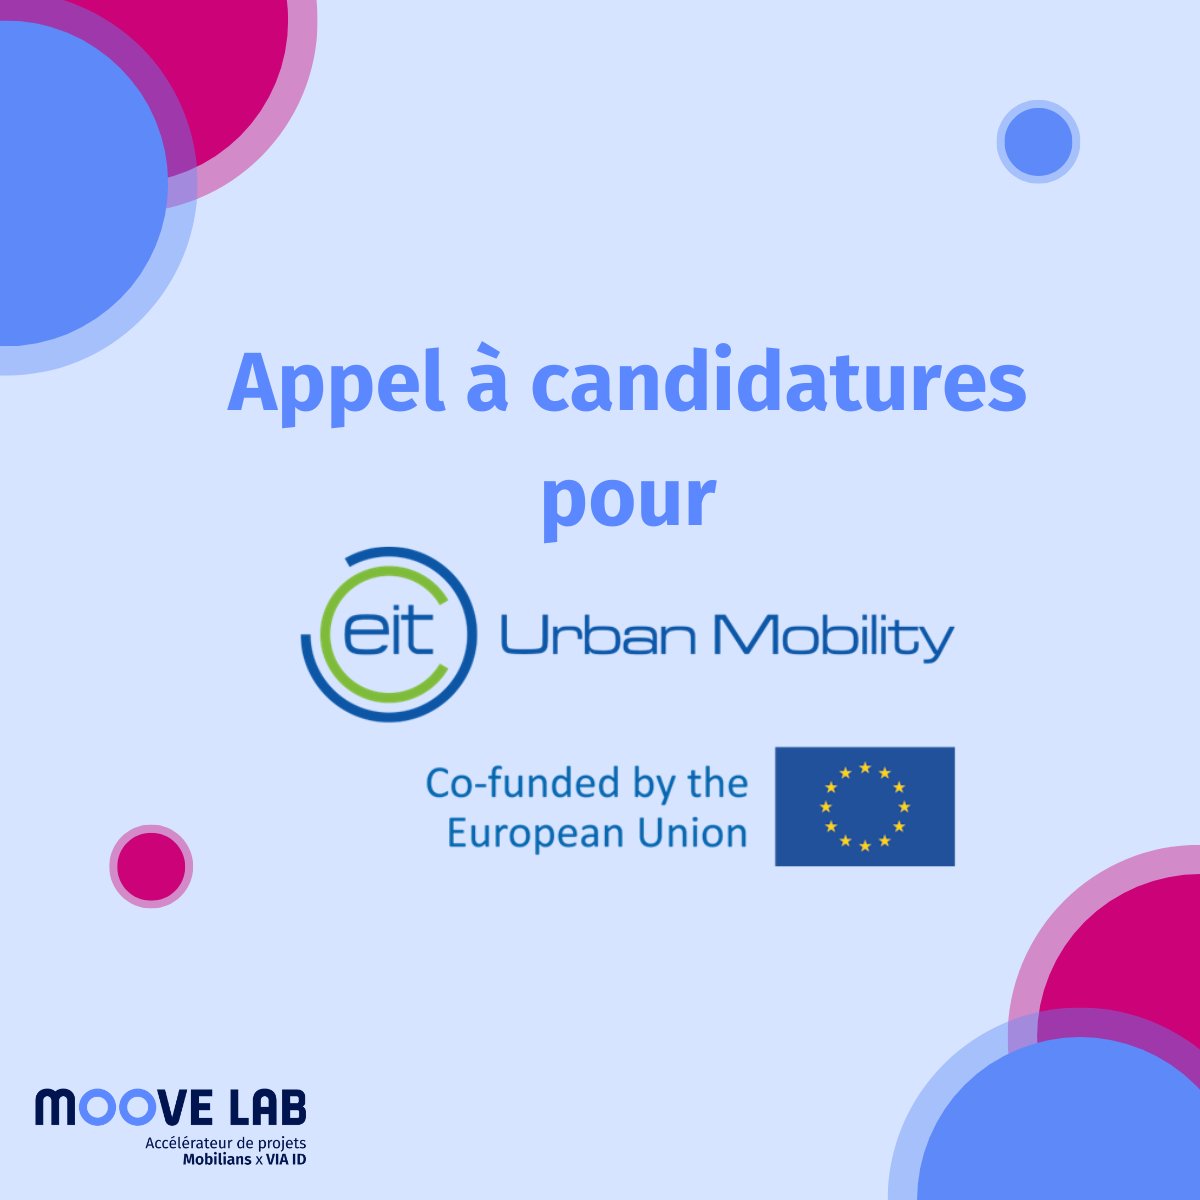 [La vie au Moove Lab]🚀Rejoignez l’aventure de l'@EITUrbanMob!🇪🇺

Le Moove Lab soutient l'@EITUrbanMob, dans le développement de l'écosystème des #startups de la #mobilité en France et en Europe.
L'@EITUrbanMob propose un soutien financier en fonds propre👉urlz.fr/qj0y